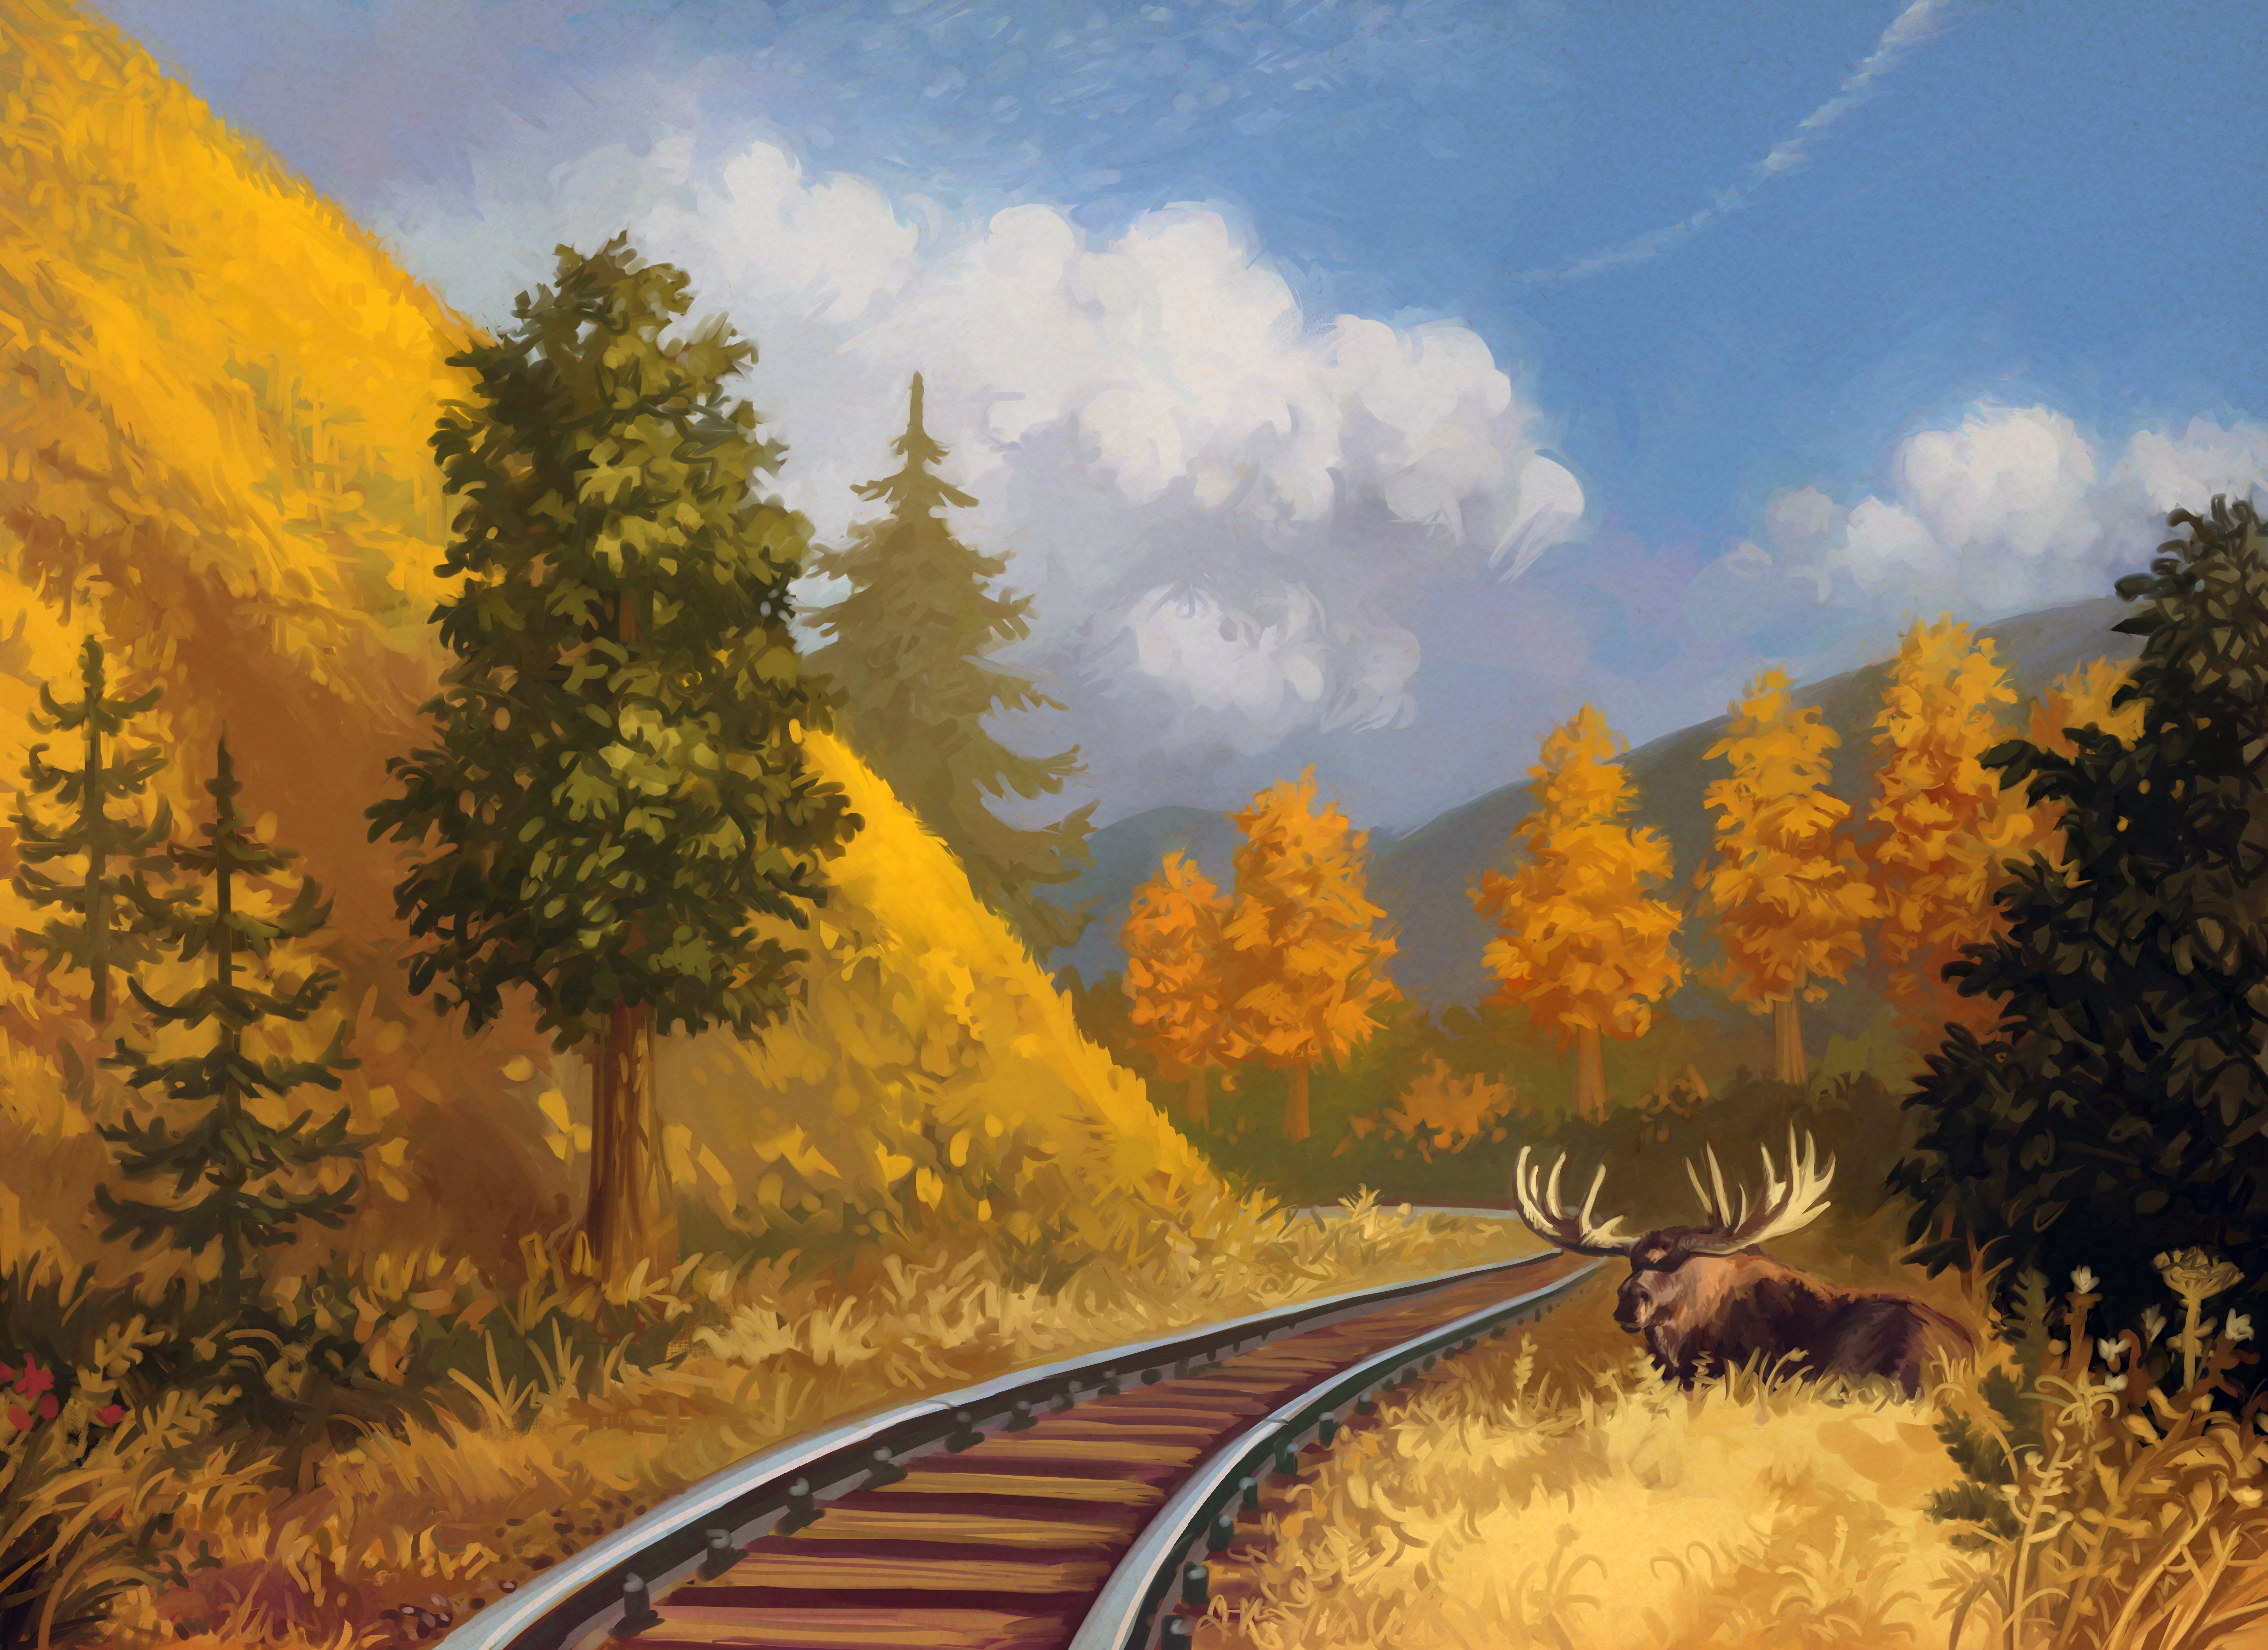 Лось на рельсах. Пейзаж с железной дорогой. Пейзаж с поездом. Железная дорога в лесу. Железная дорога иллюстрация.